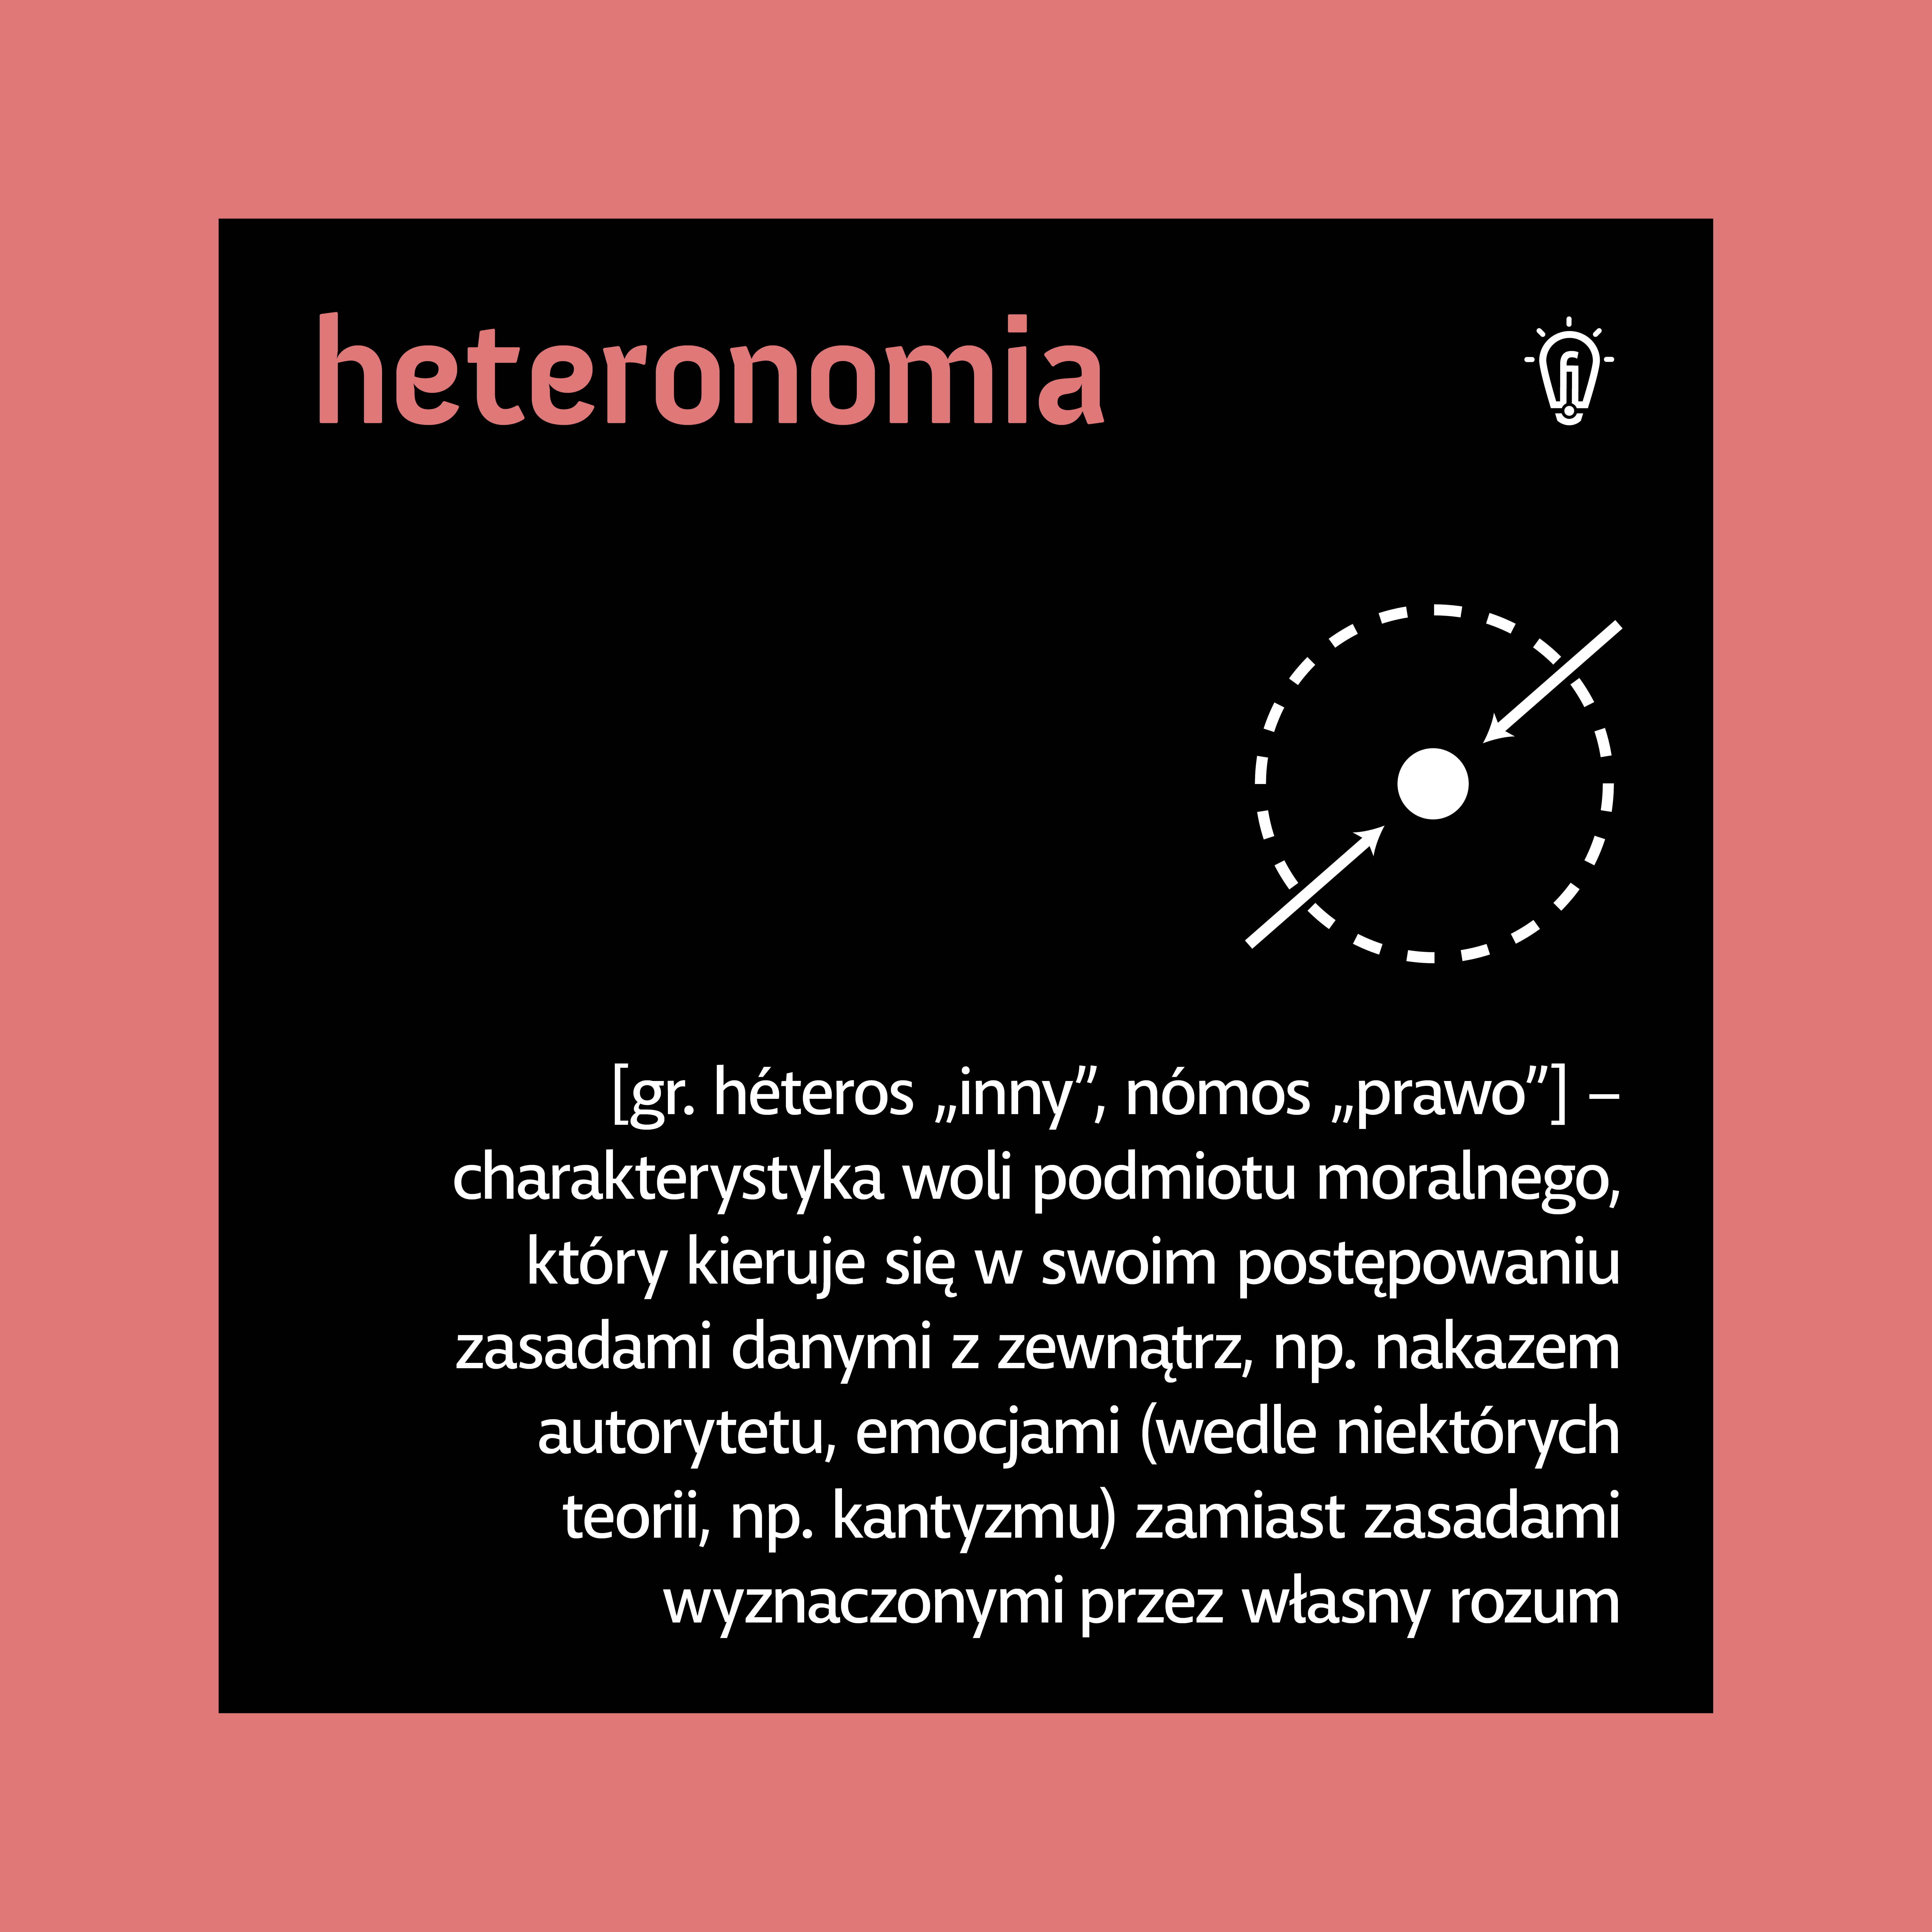 008_heteronomia